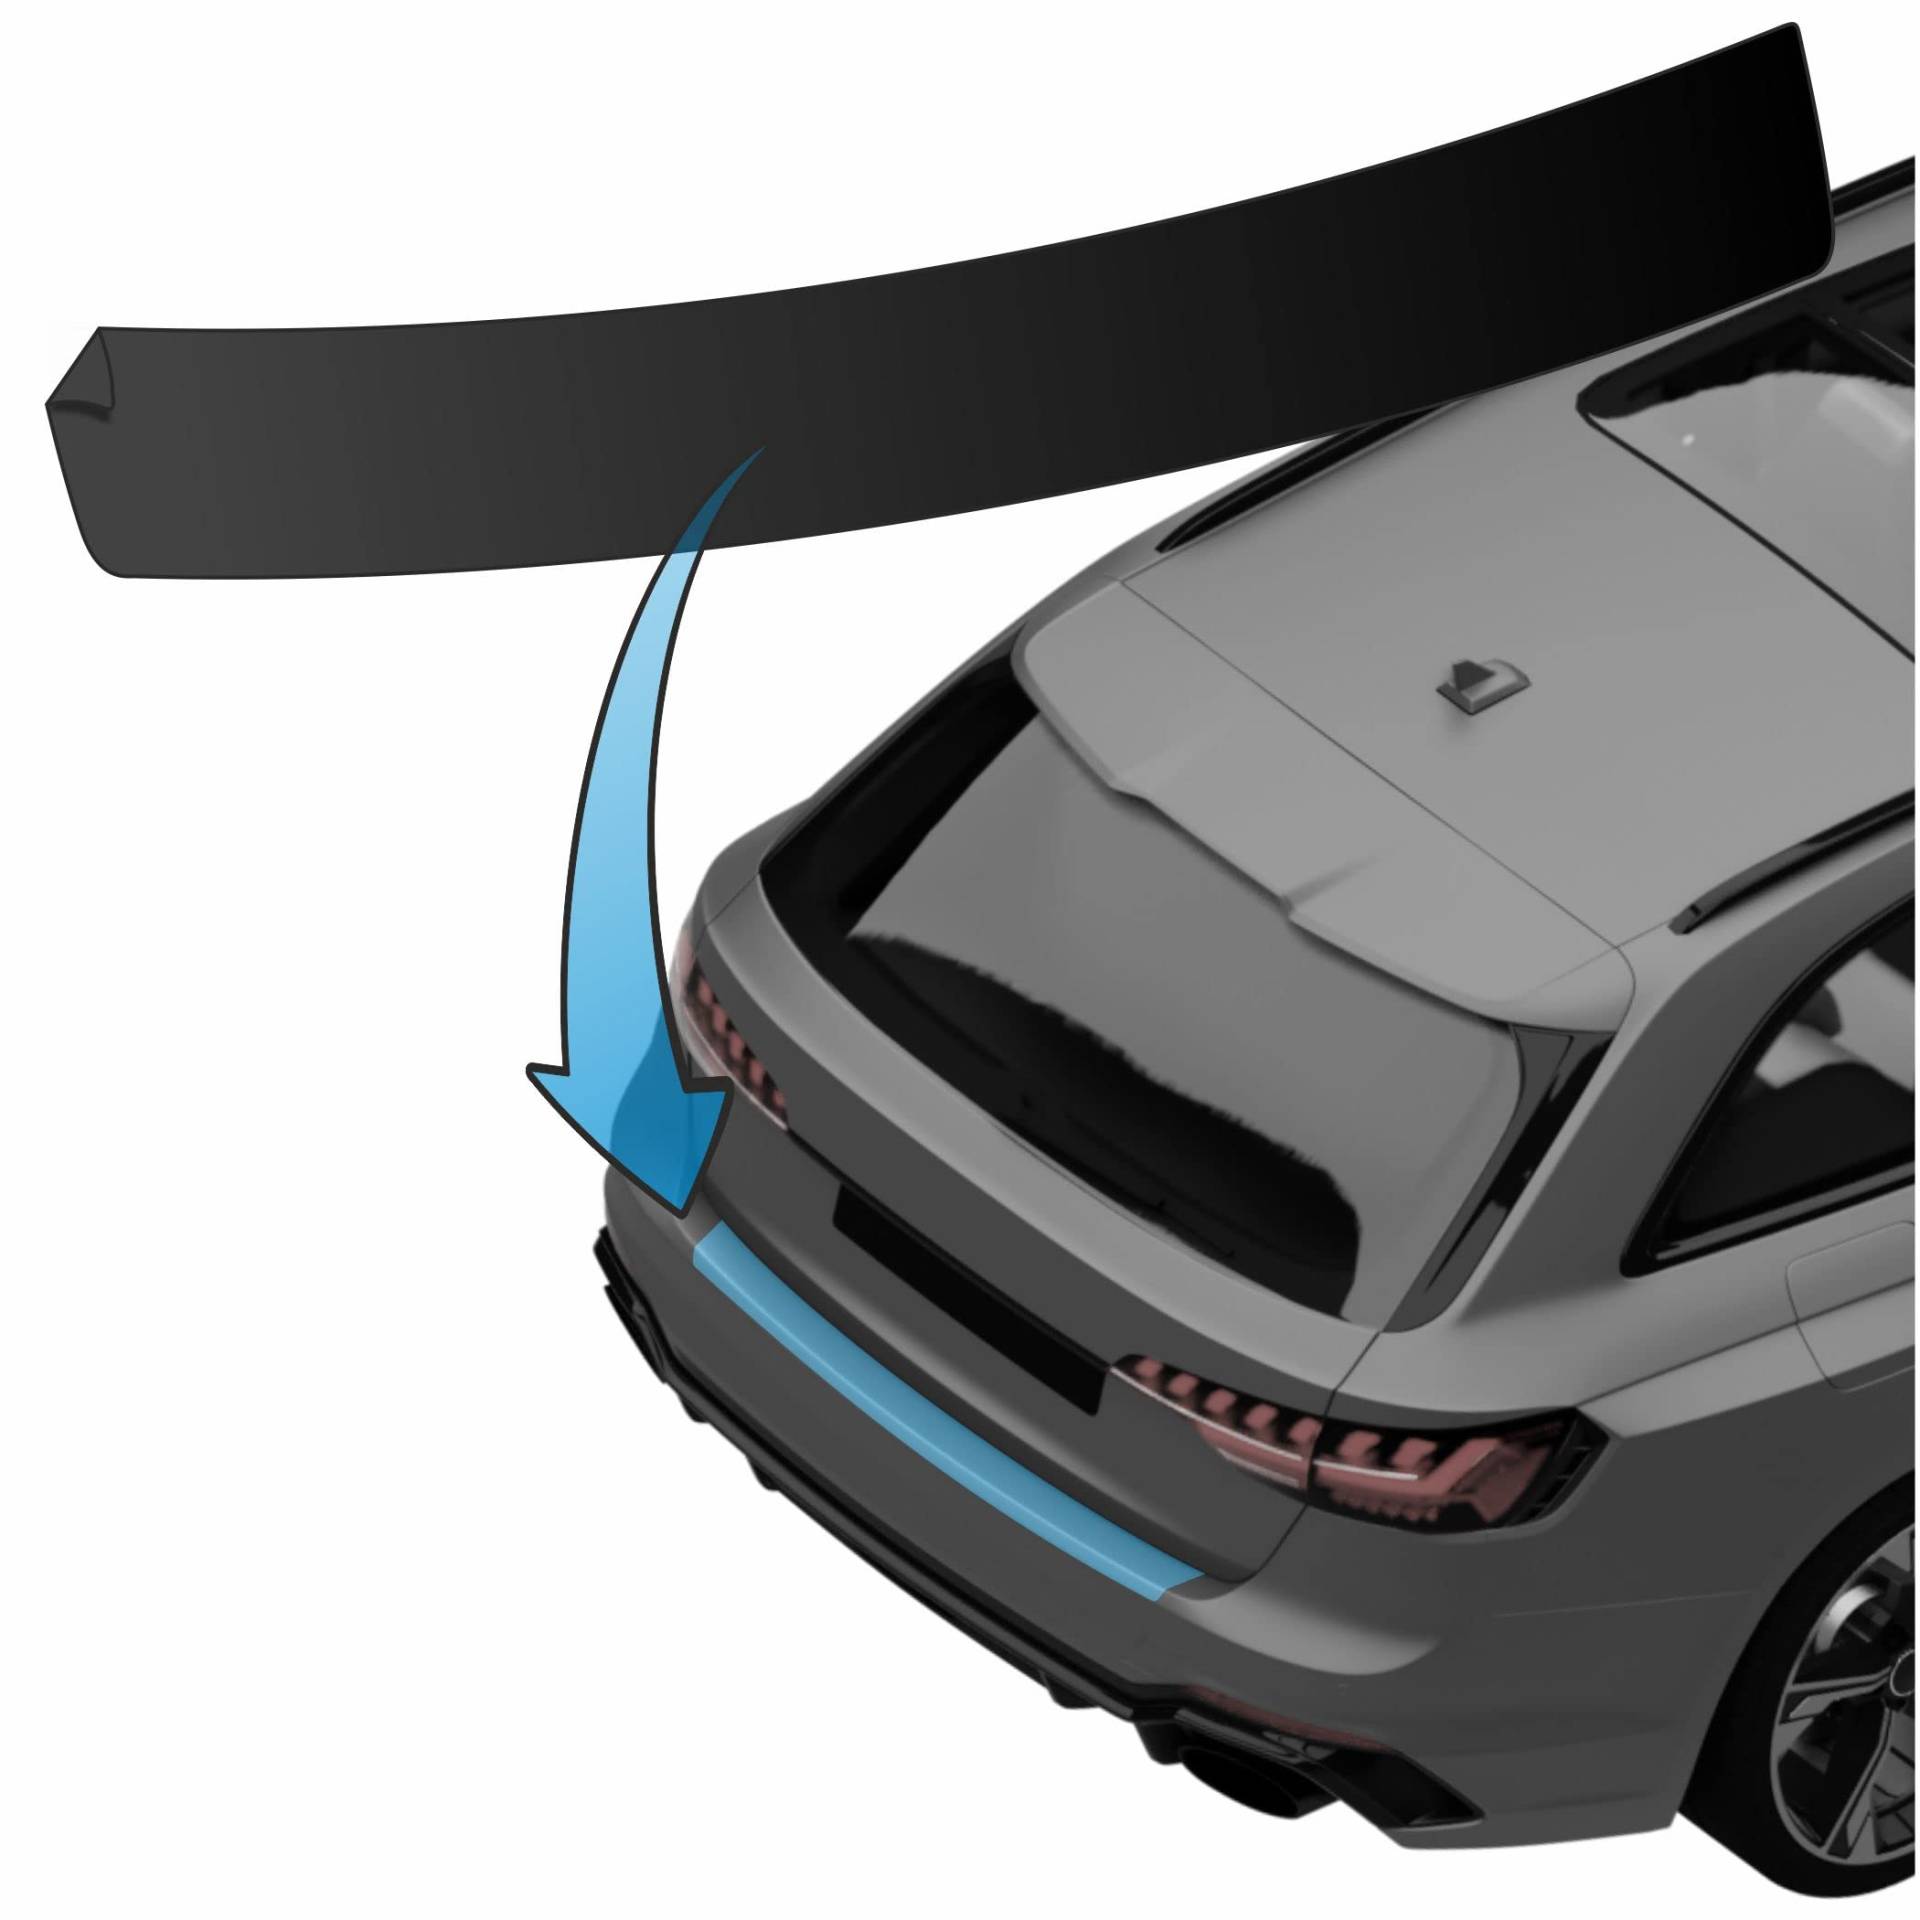 MisterLacky – Lackschutzfolie mit Rakel als Ladekantenschutz Folie passend für BMW X3 (I) Typ E83, BJ 2004-2010 in schwarz matt (150µm) von Lackschutzshop